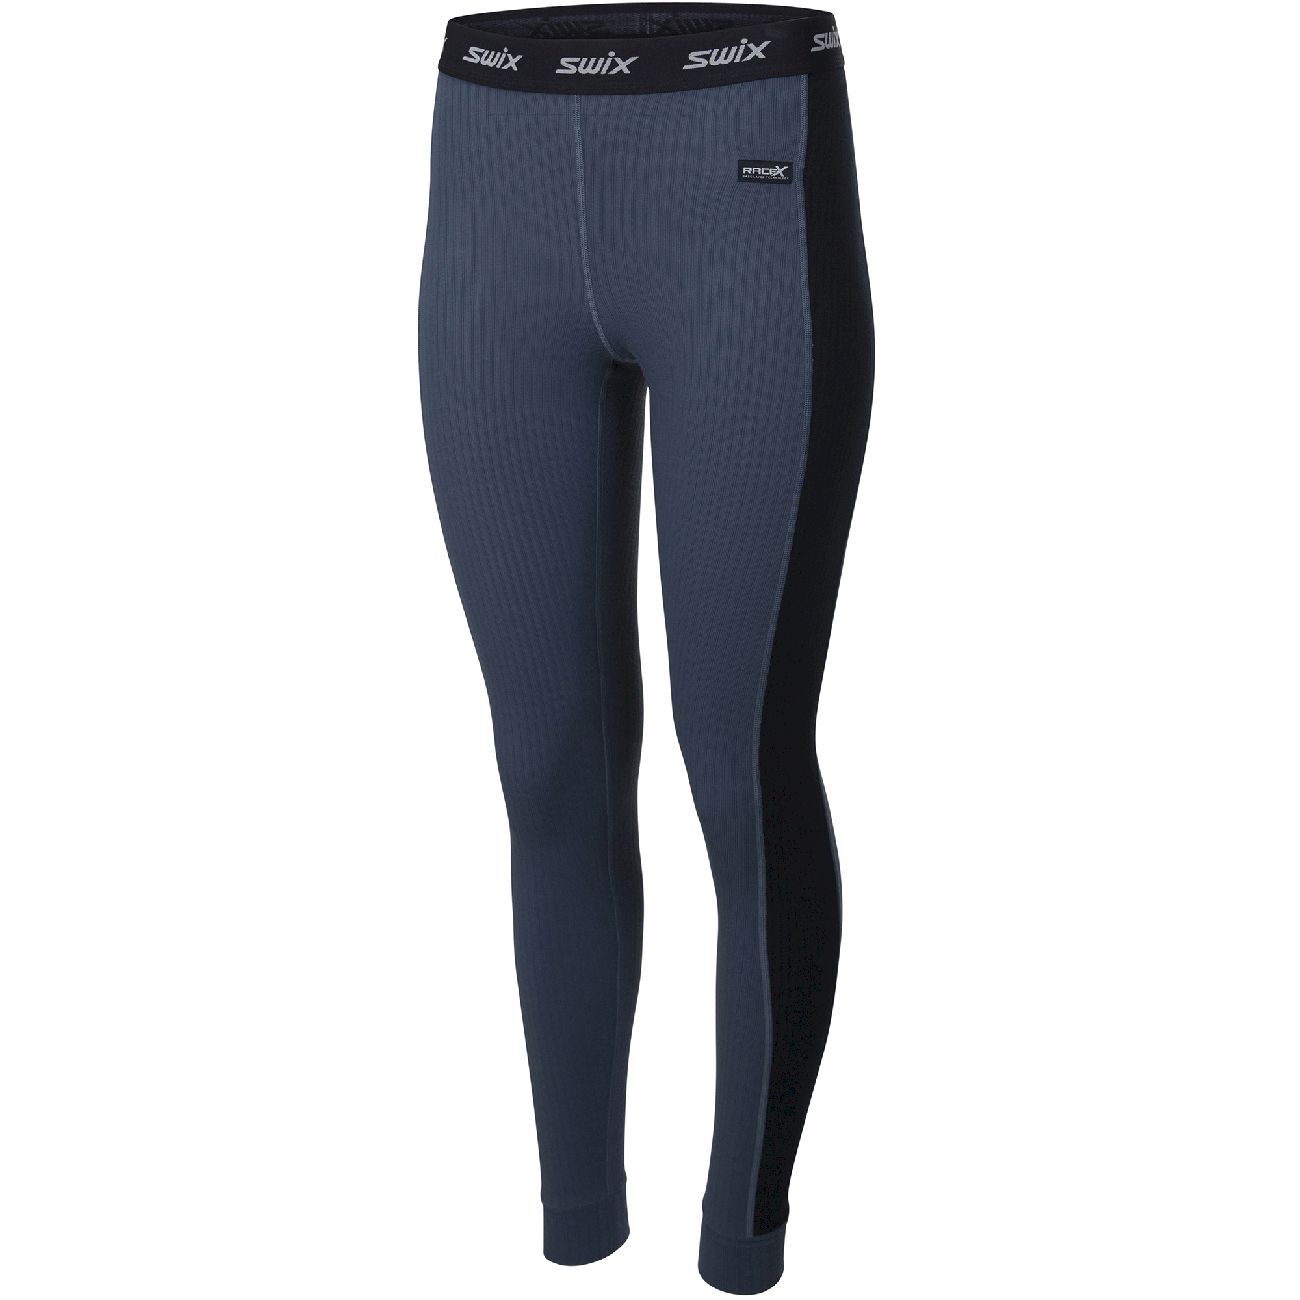 Swix Racex Bodywear Pant - Leggings - Women's